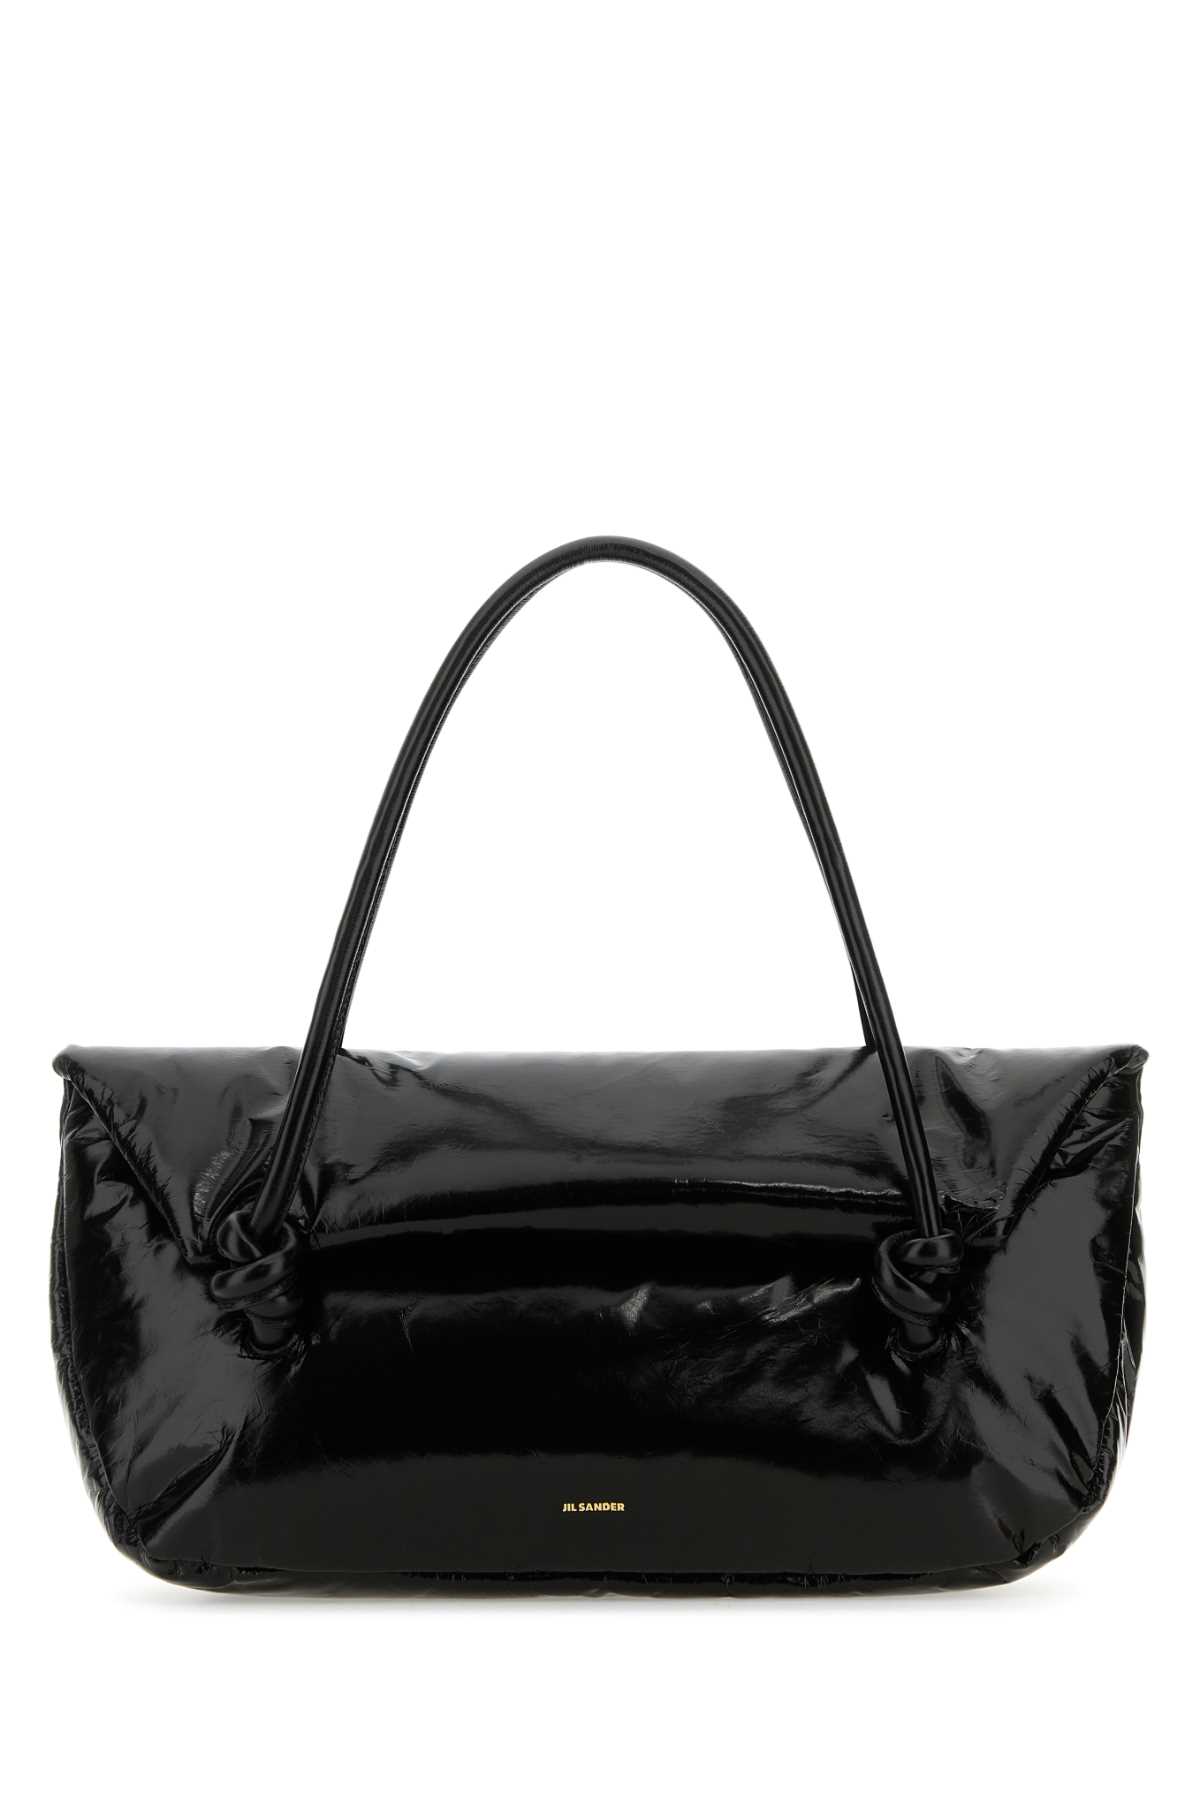 Black Leather Medium Knot Handle Handbag